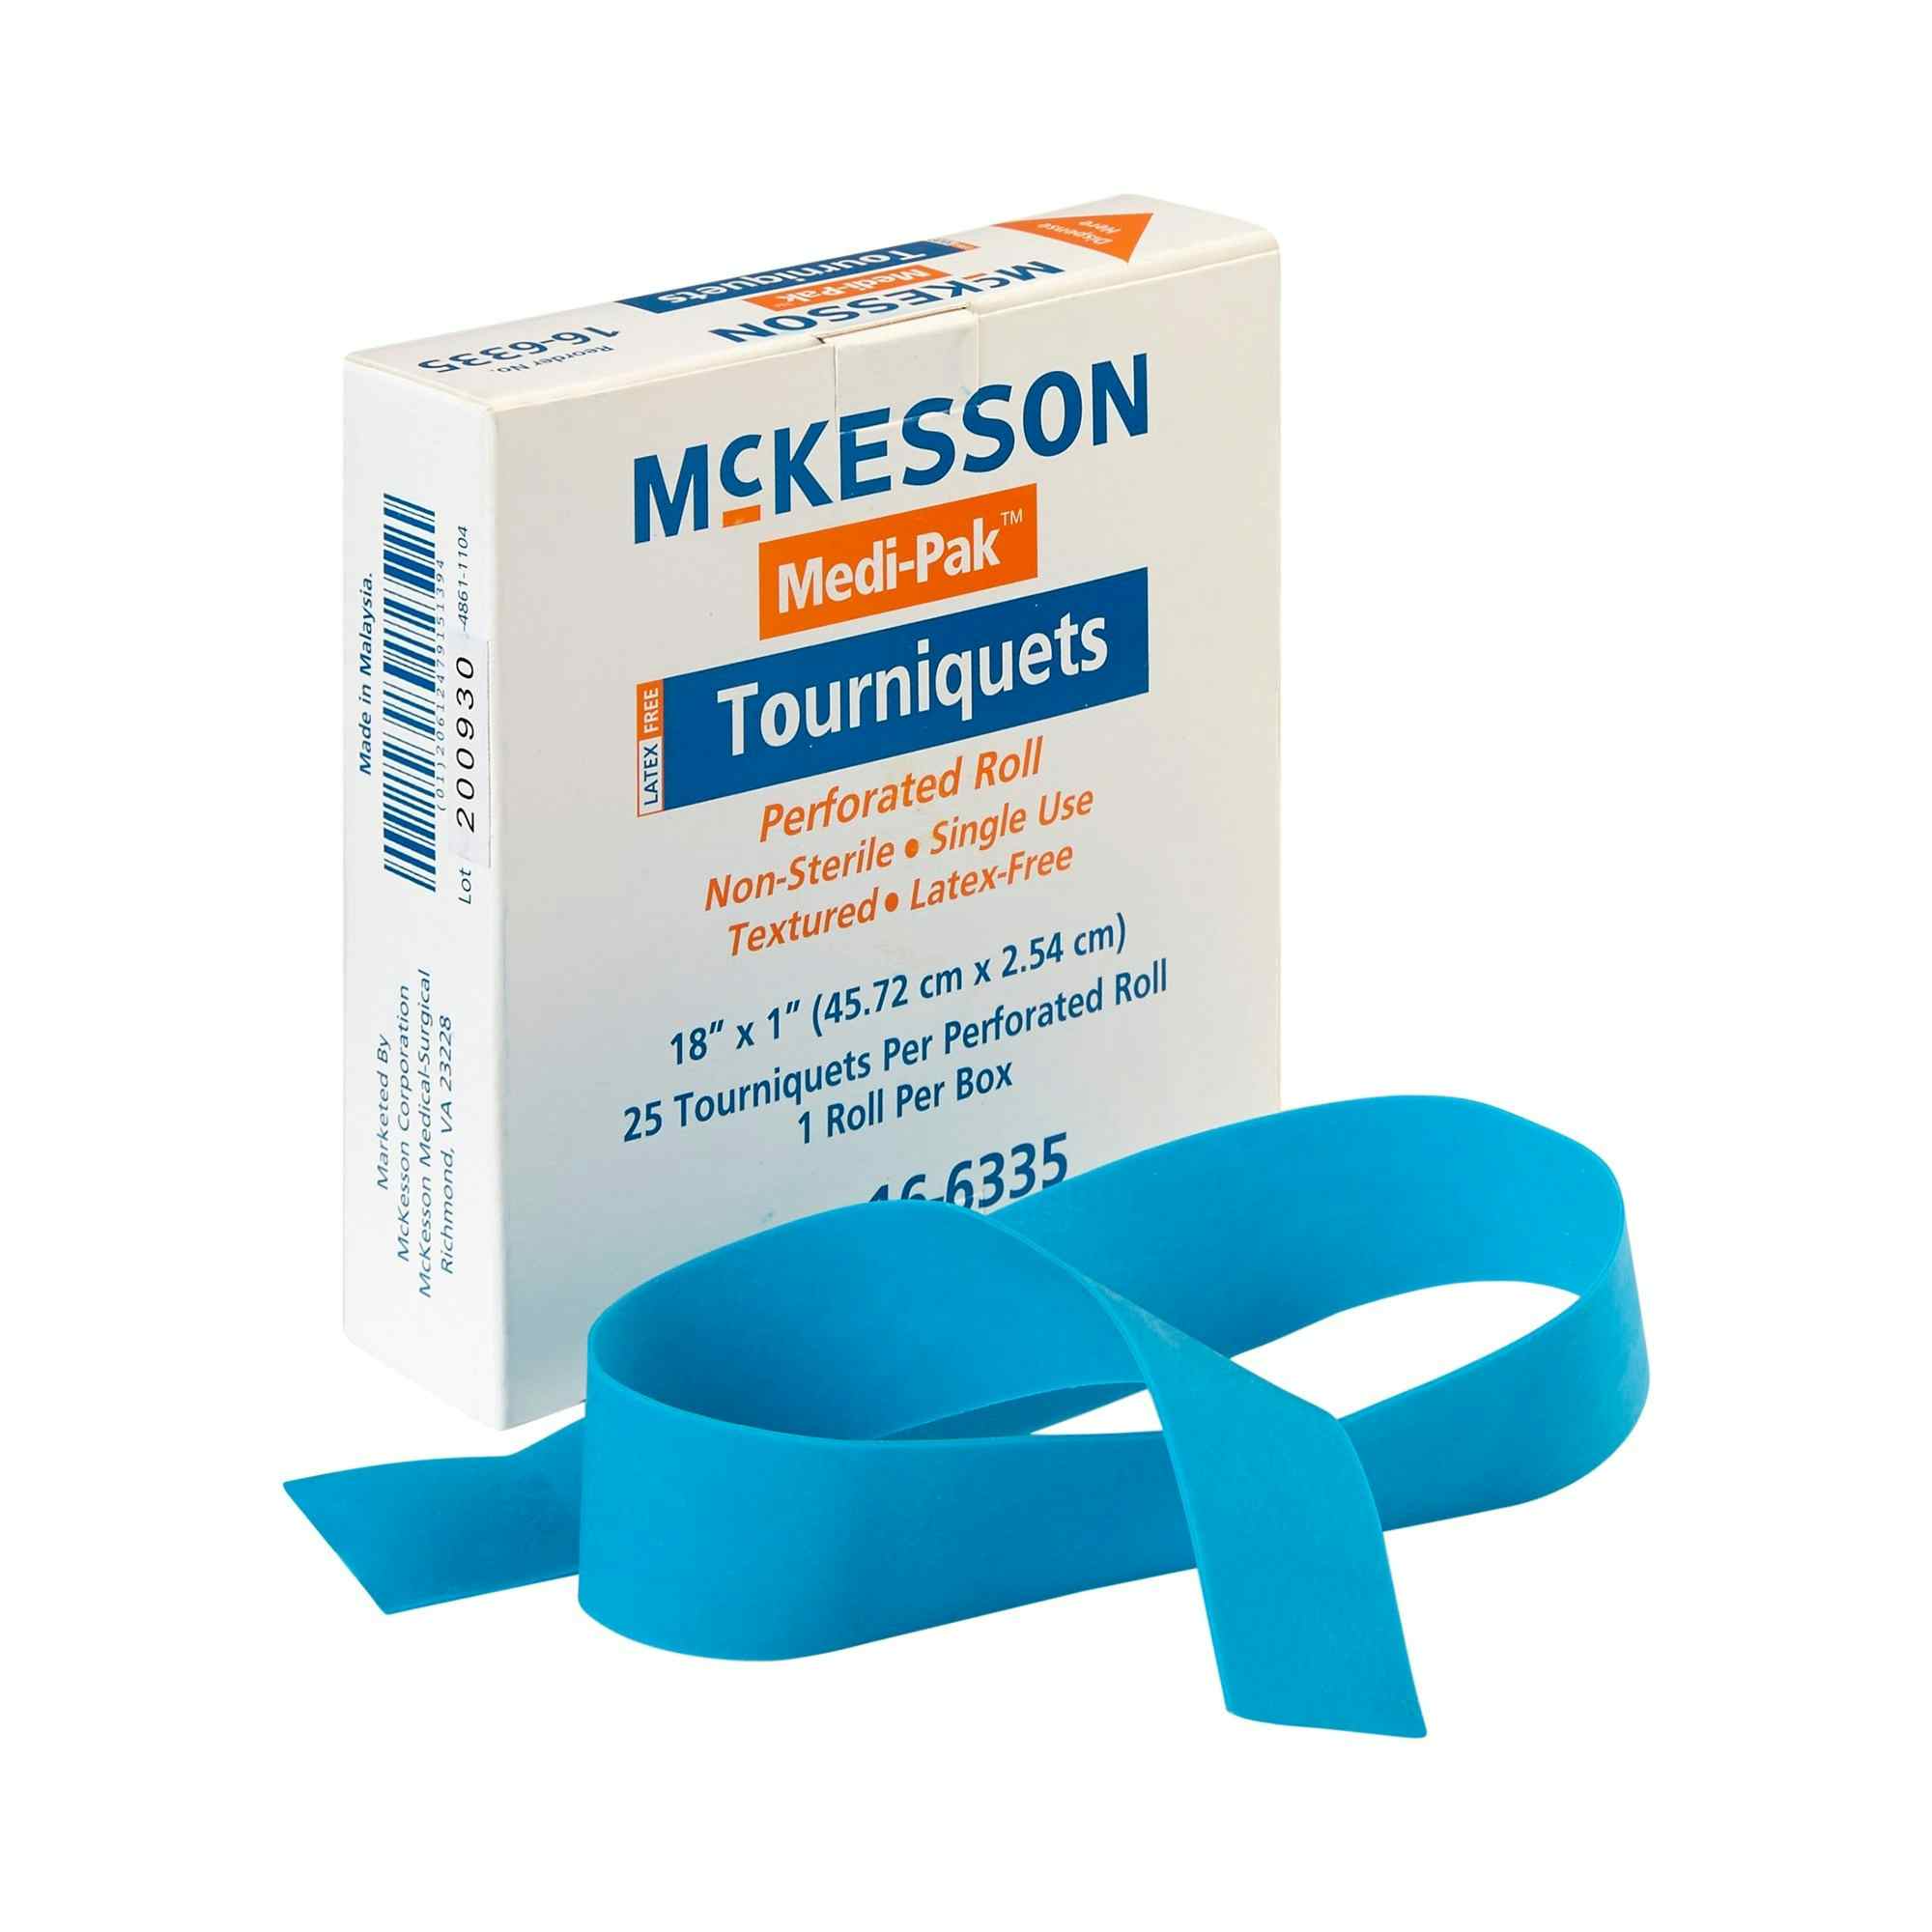 McKesson Medi-Pak Tourniquet, Perforated Roll, 18 X 1", 16-6335, Case of 500 (4 Boxes)